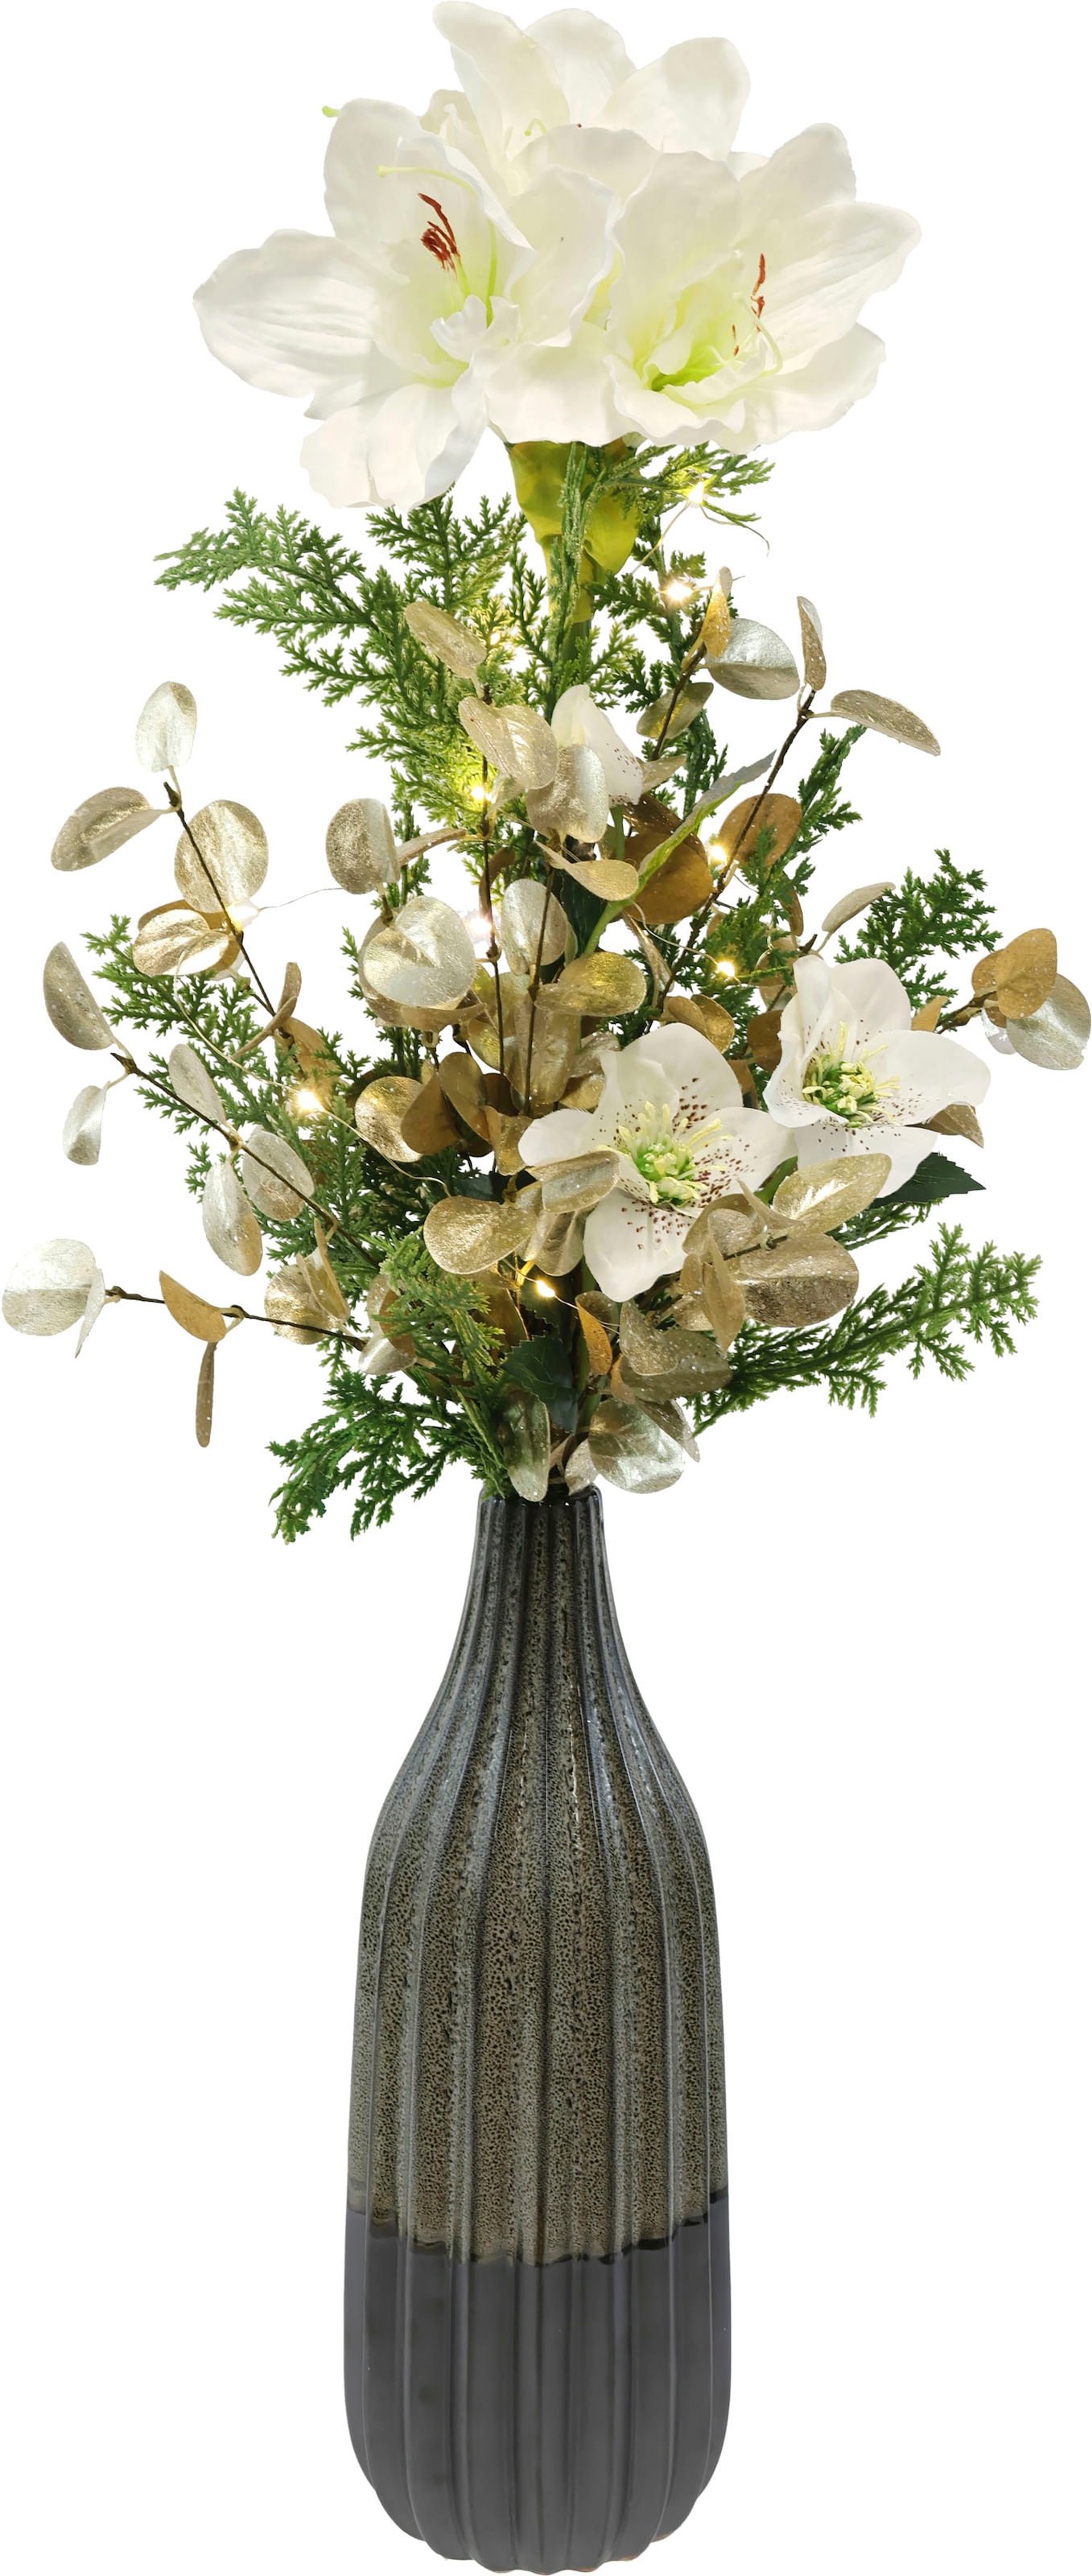 I.GE.A. Winterliche Kunstpflanze »mit Amaryllis in Vase aus Keramik, Blumen-Arrangement, LED-Beleuchtung«, Weihnachtsdeko, Gesteck aus Blüten, Eukalyptus, Koniferen und Zweigen